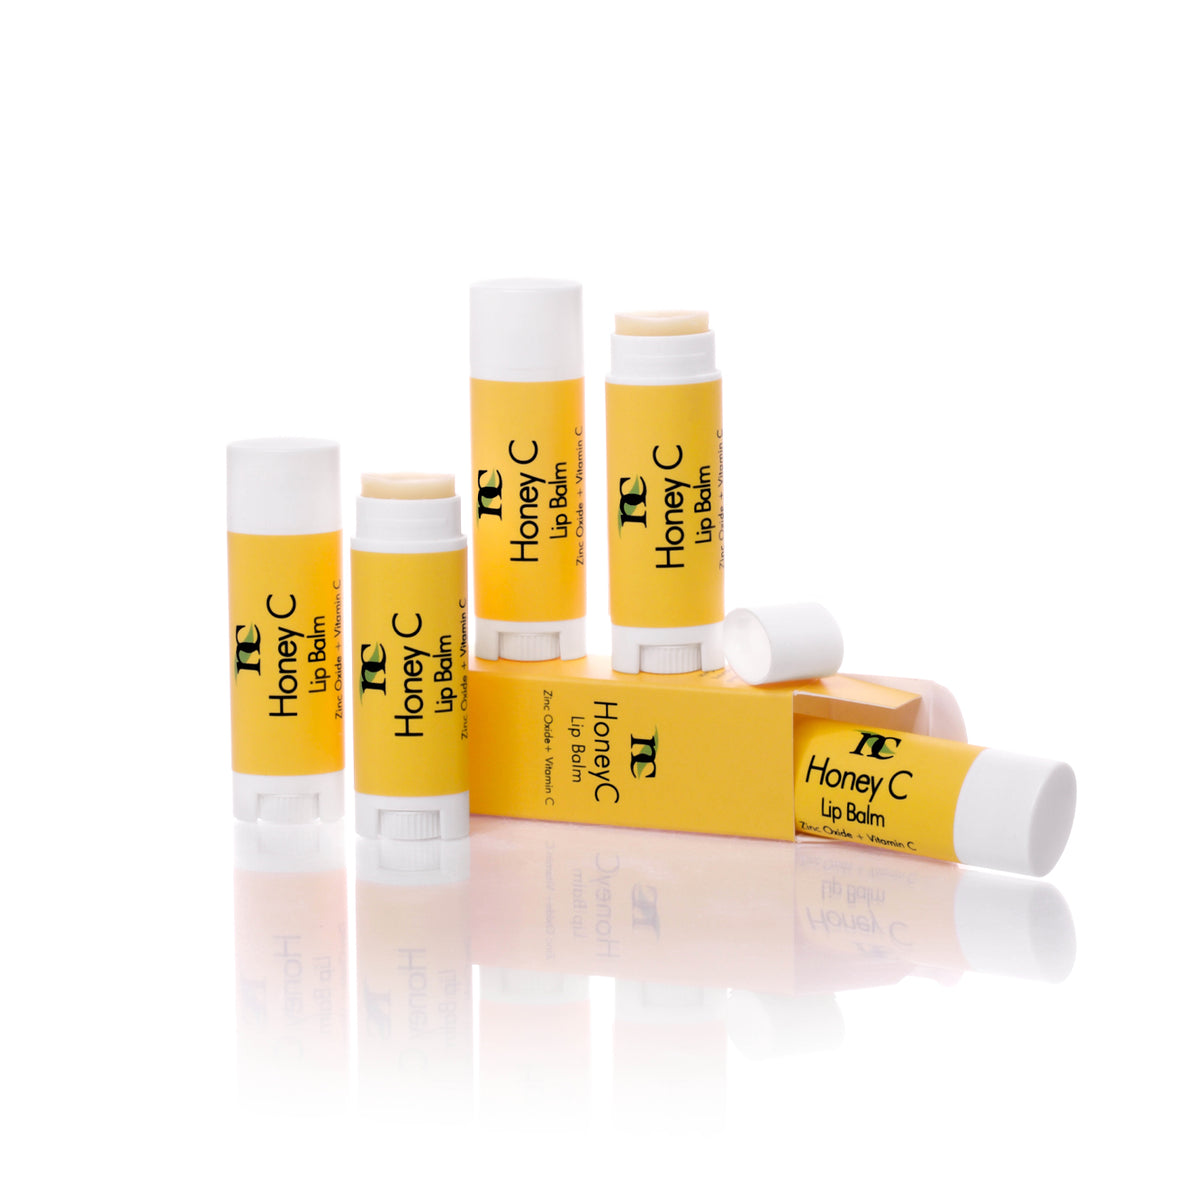 Honey C Lip Balm product photo on white background